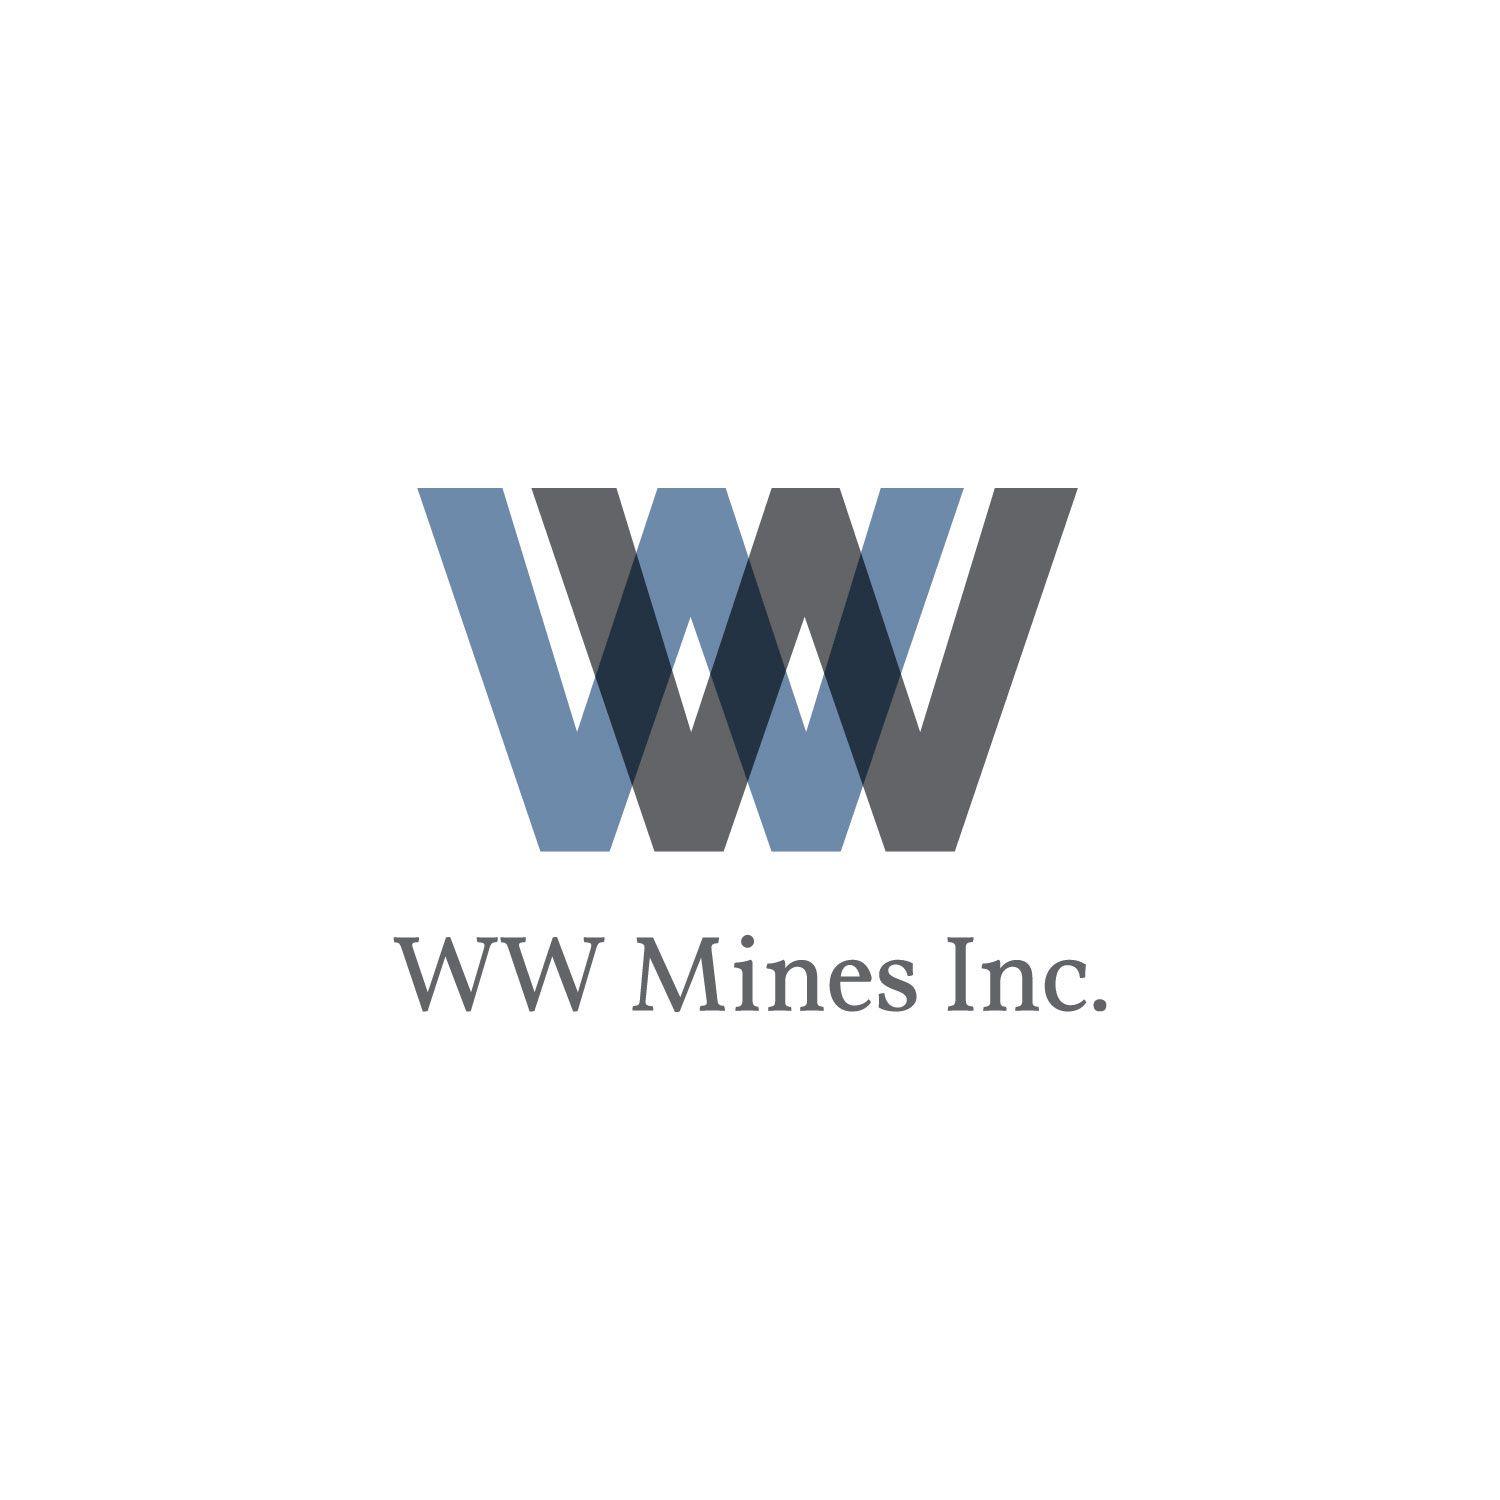 WW Logo - WW Mines Inc